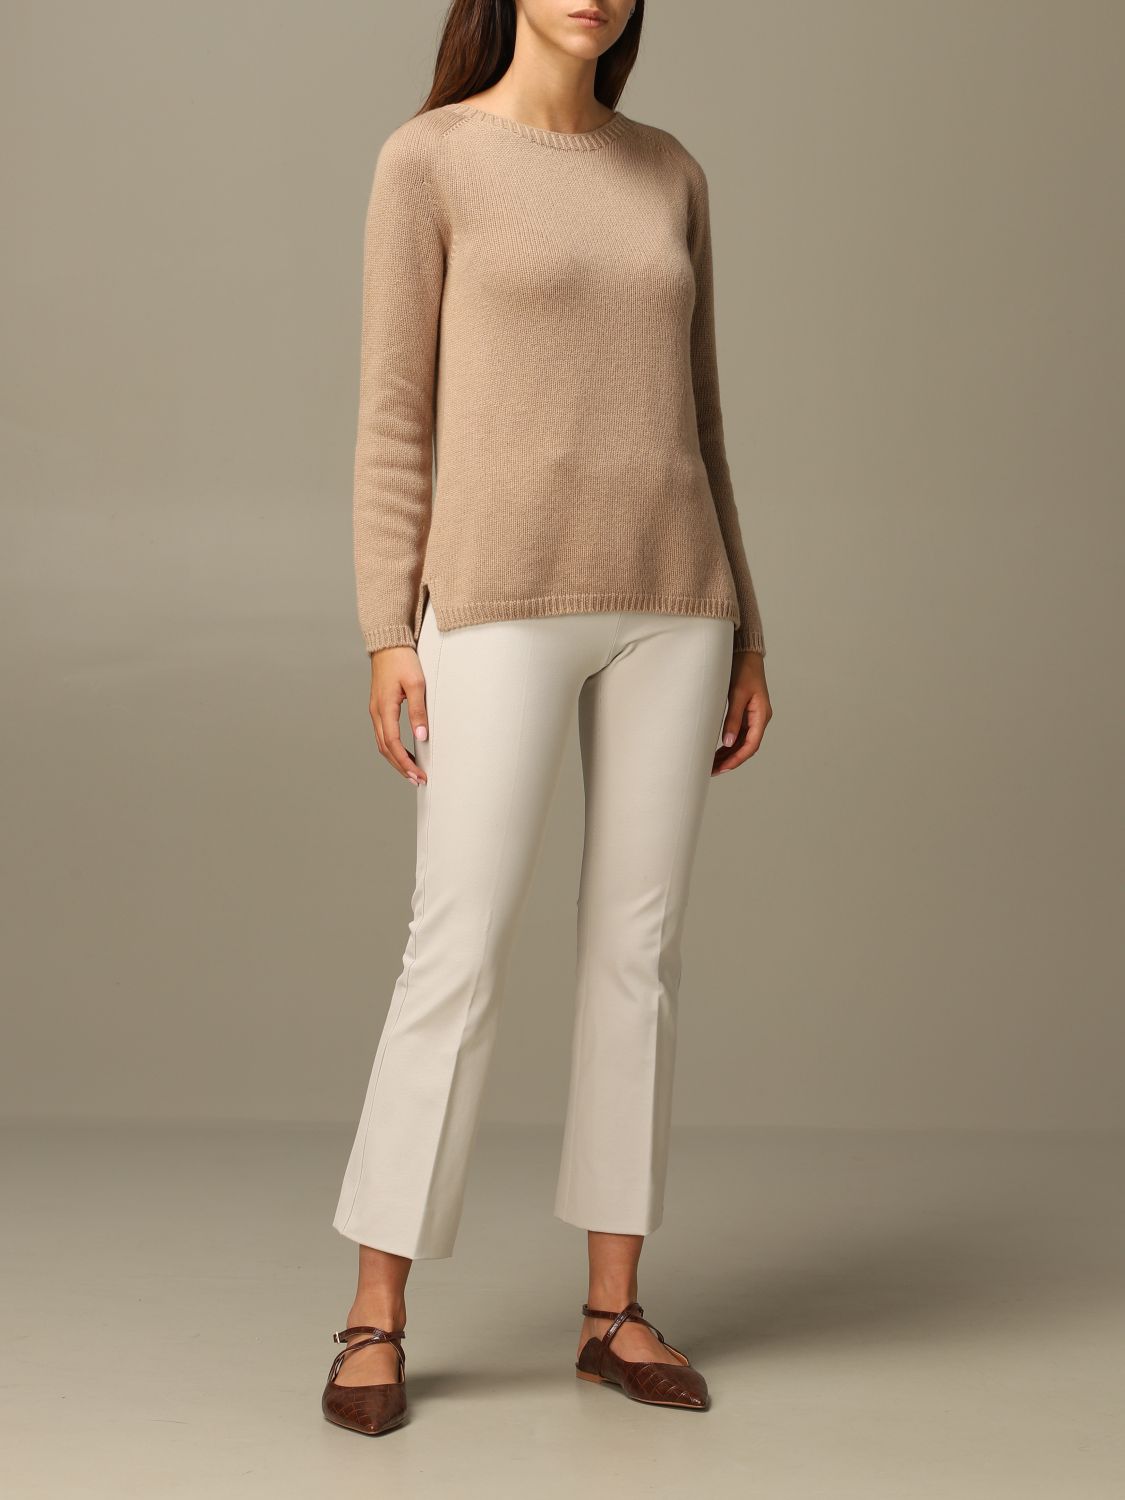 S MAX MARA: Giorgio cashmere pullover - Camel | Sweater S Max Mara